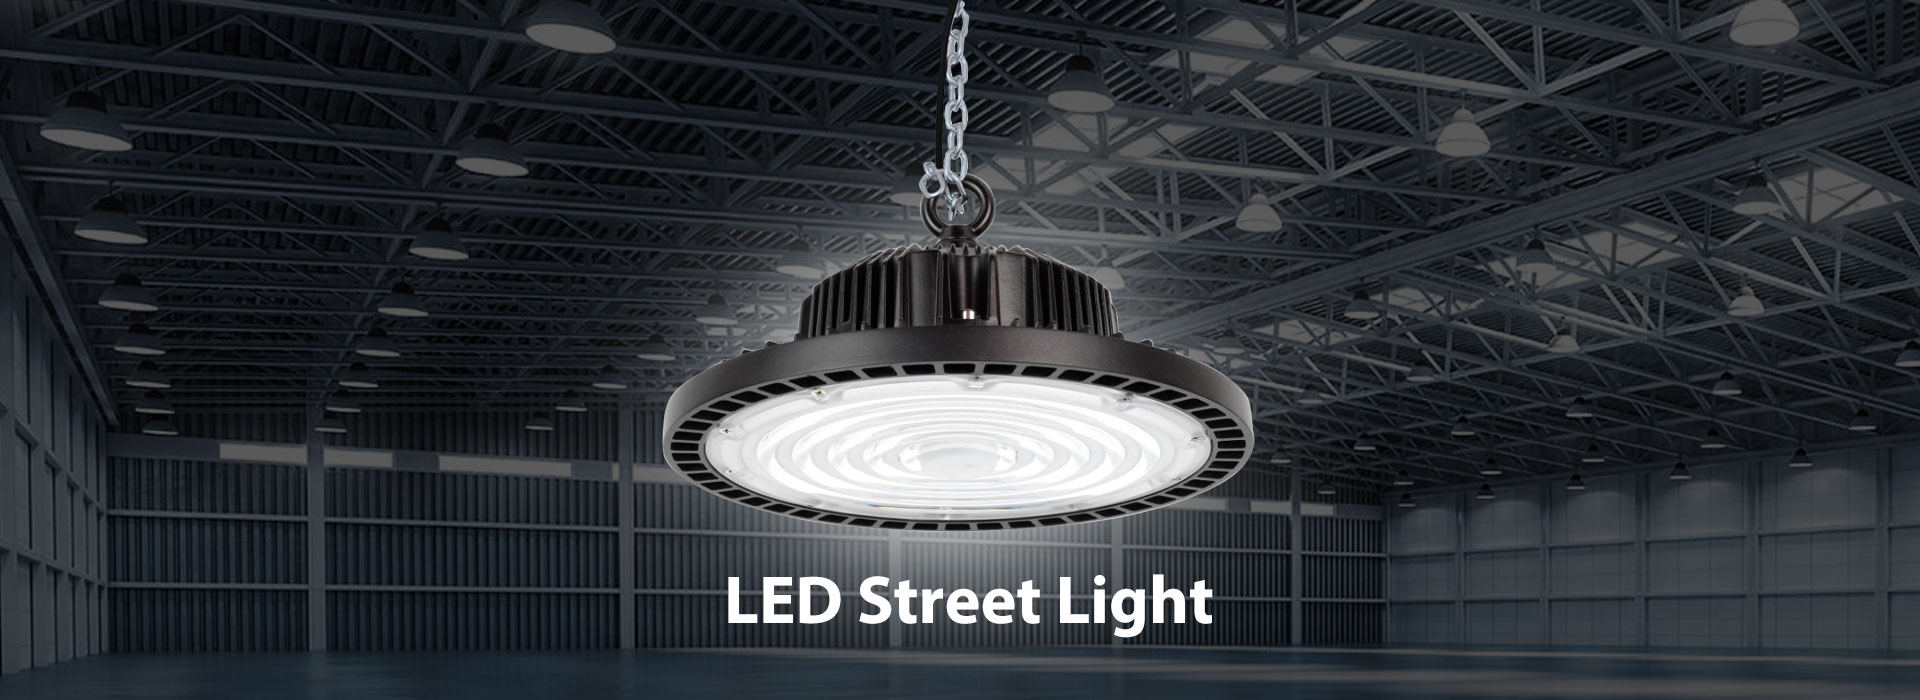 China LED-straatverlichtingfabriek